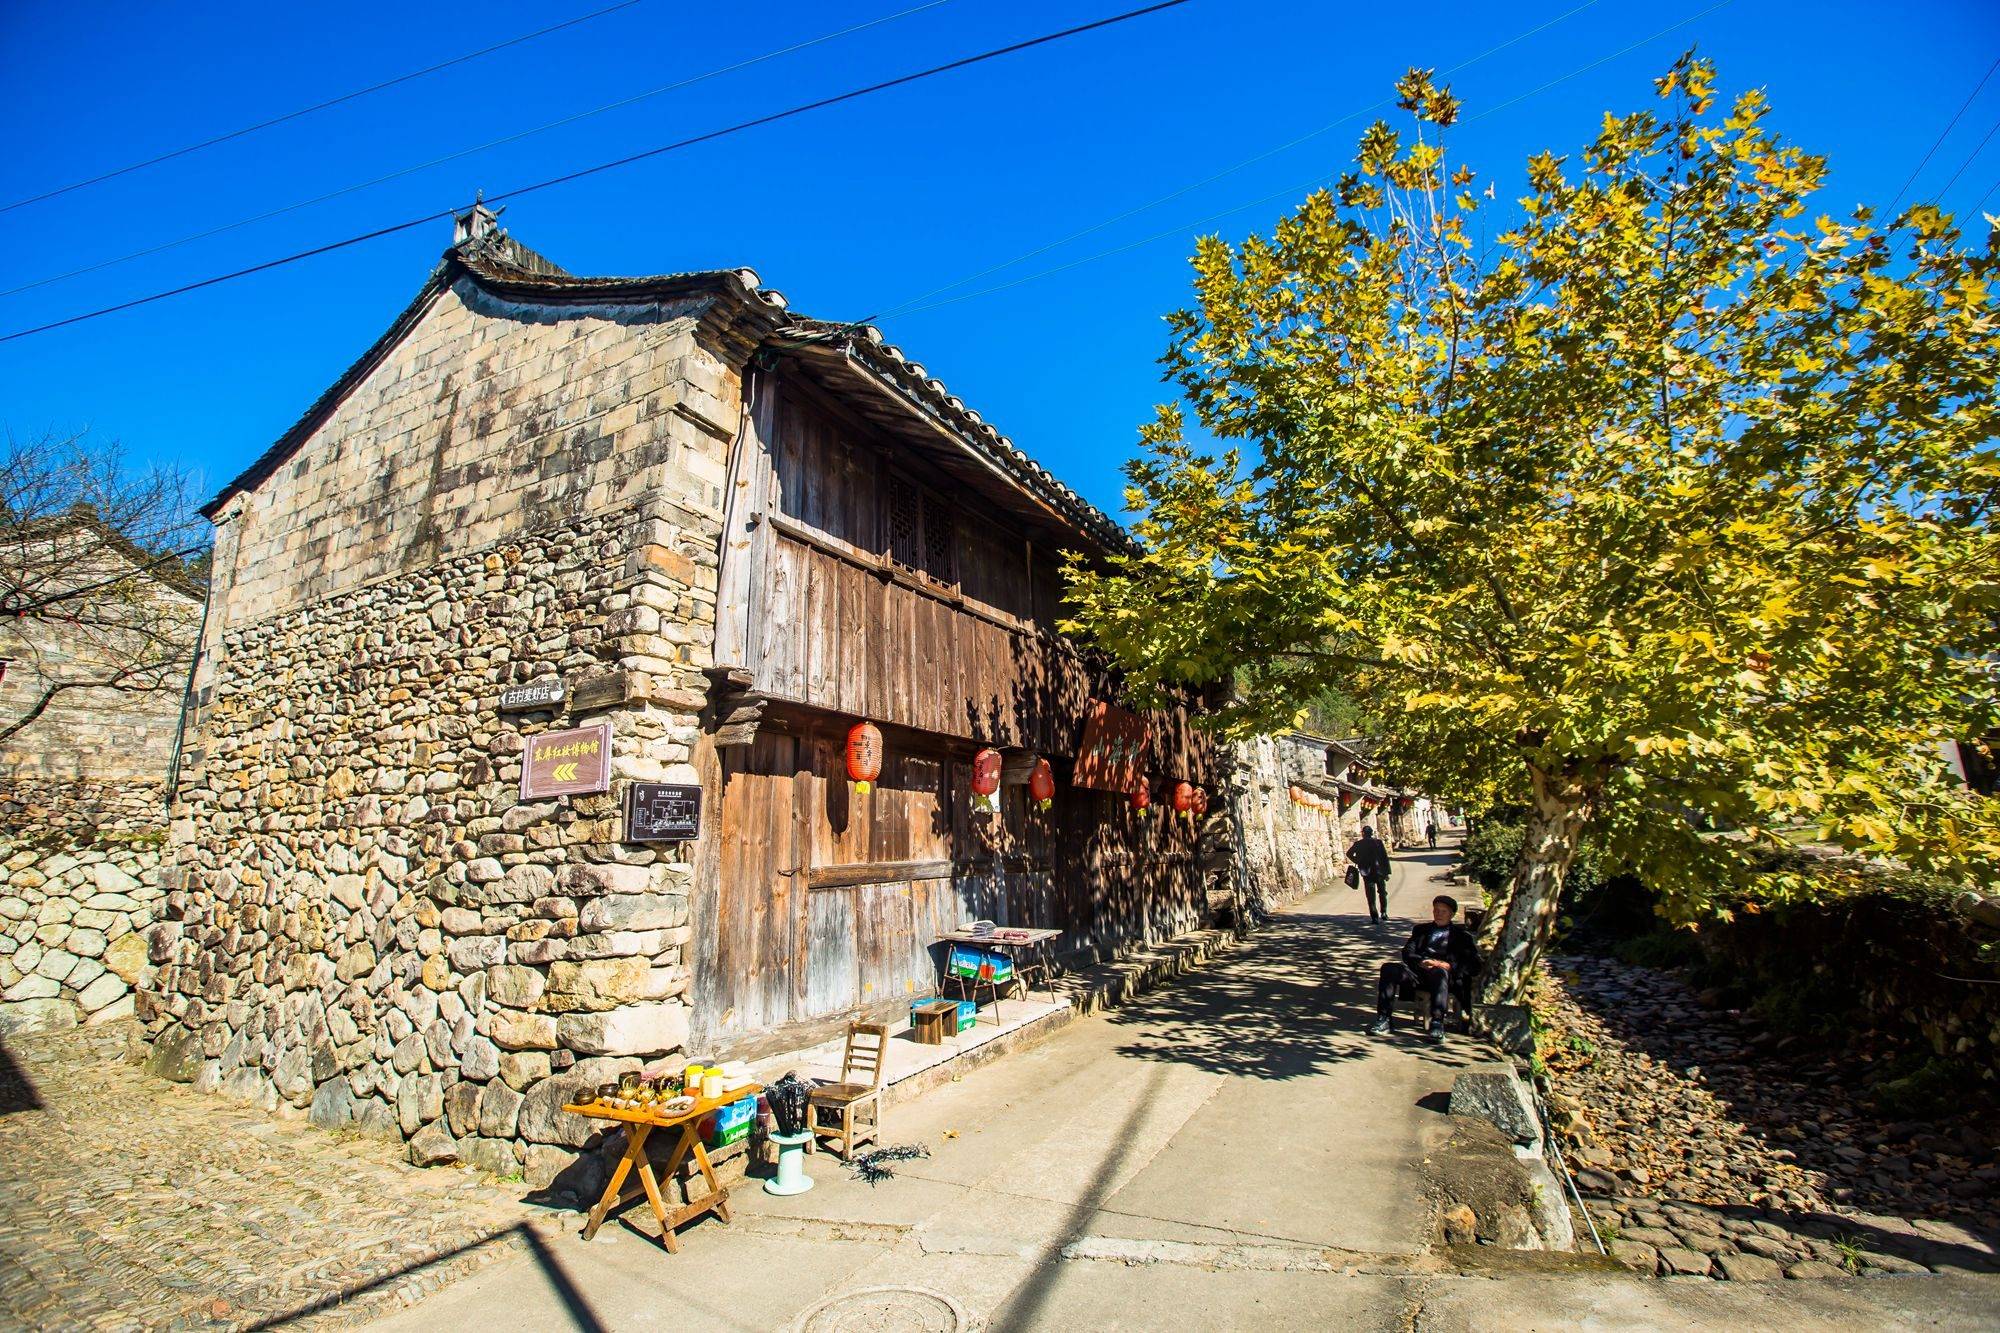 浙江三门东屏古村,历史悠久,风景秀美,带你走进中国画里的村庄